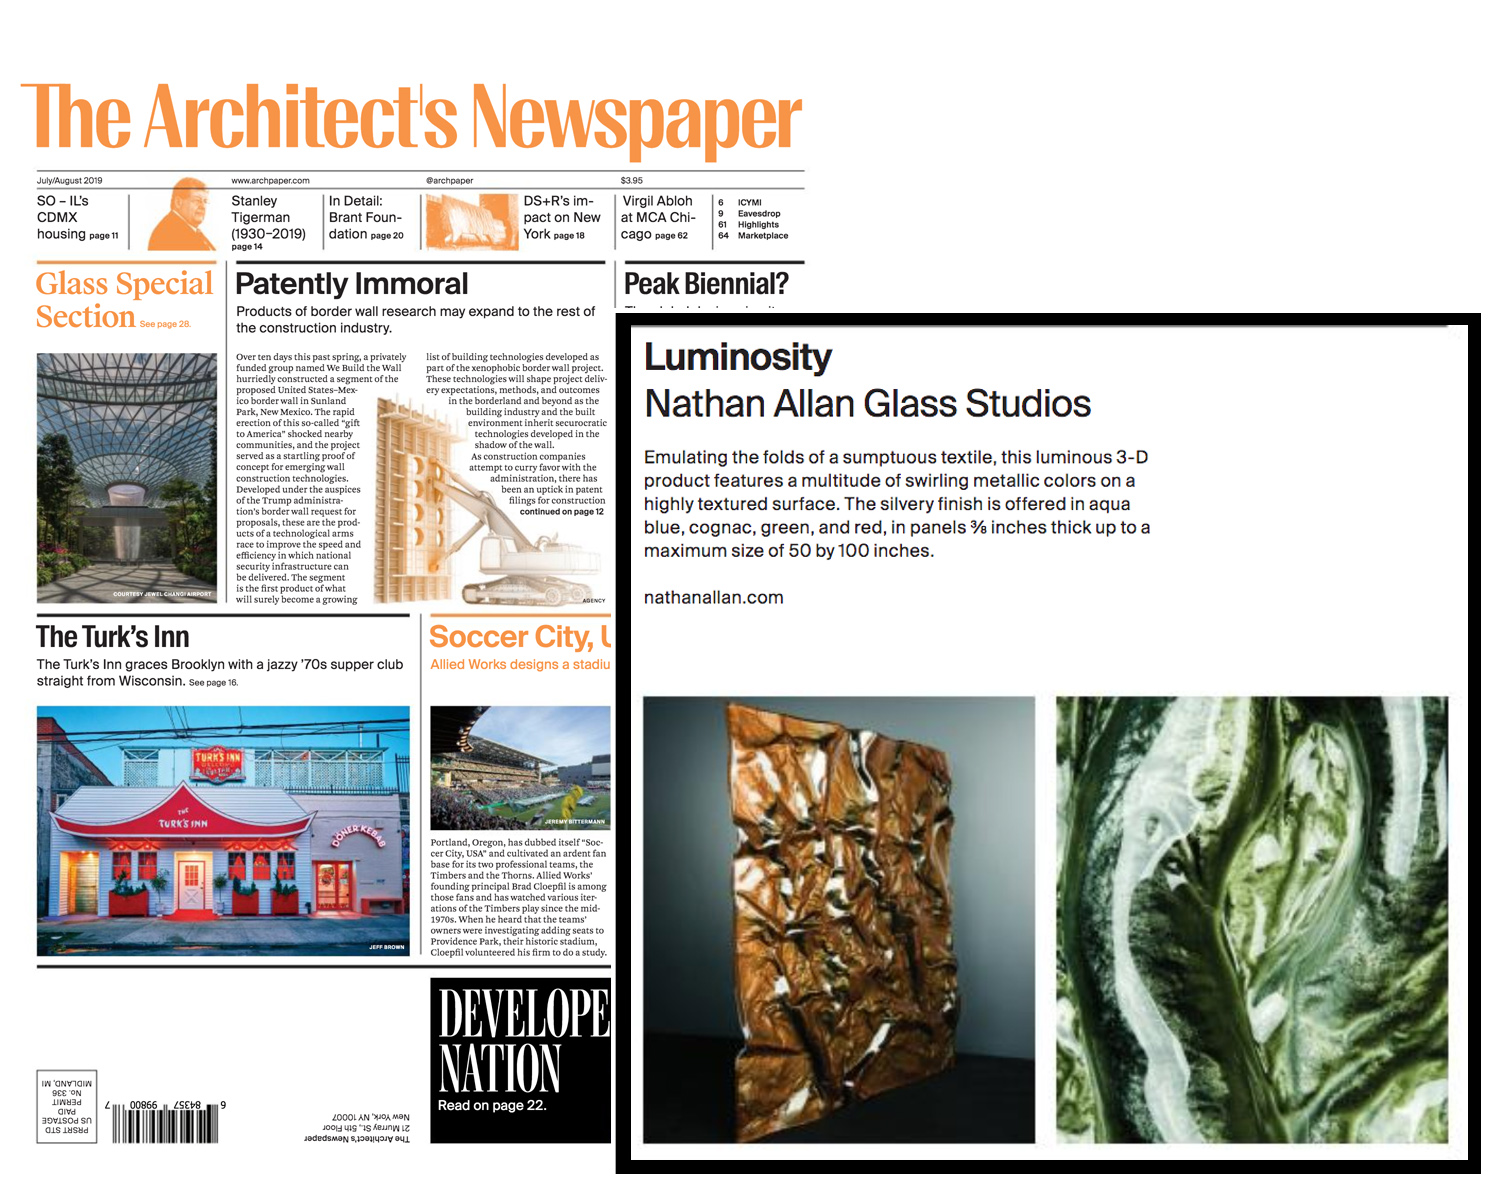 The Architect's Newspaper | Luminosity